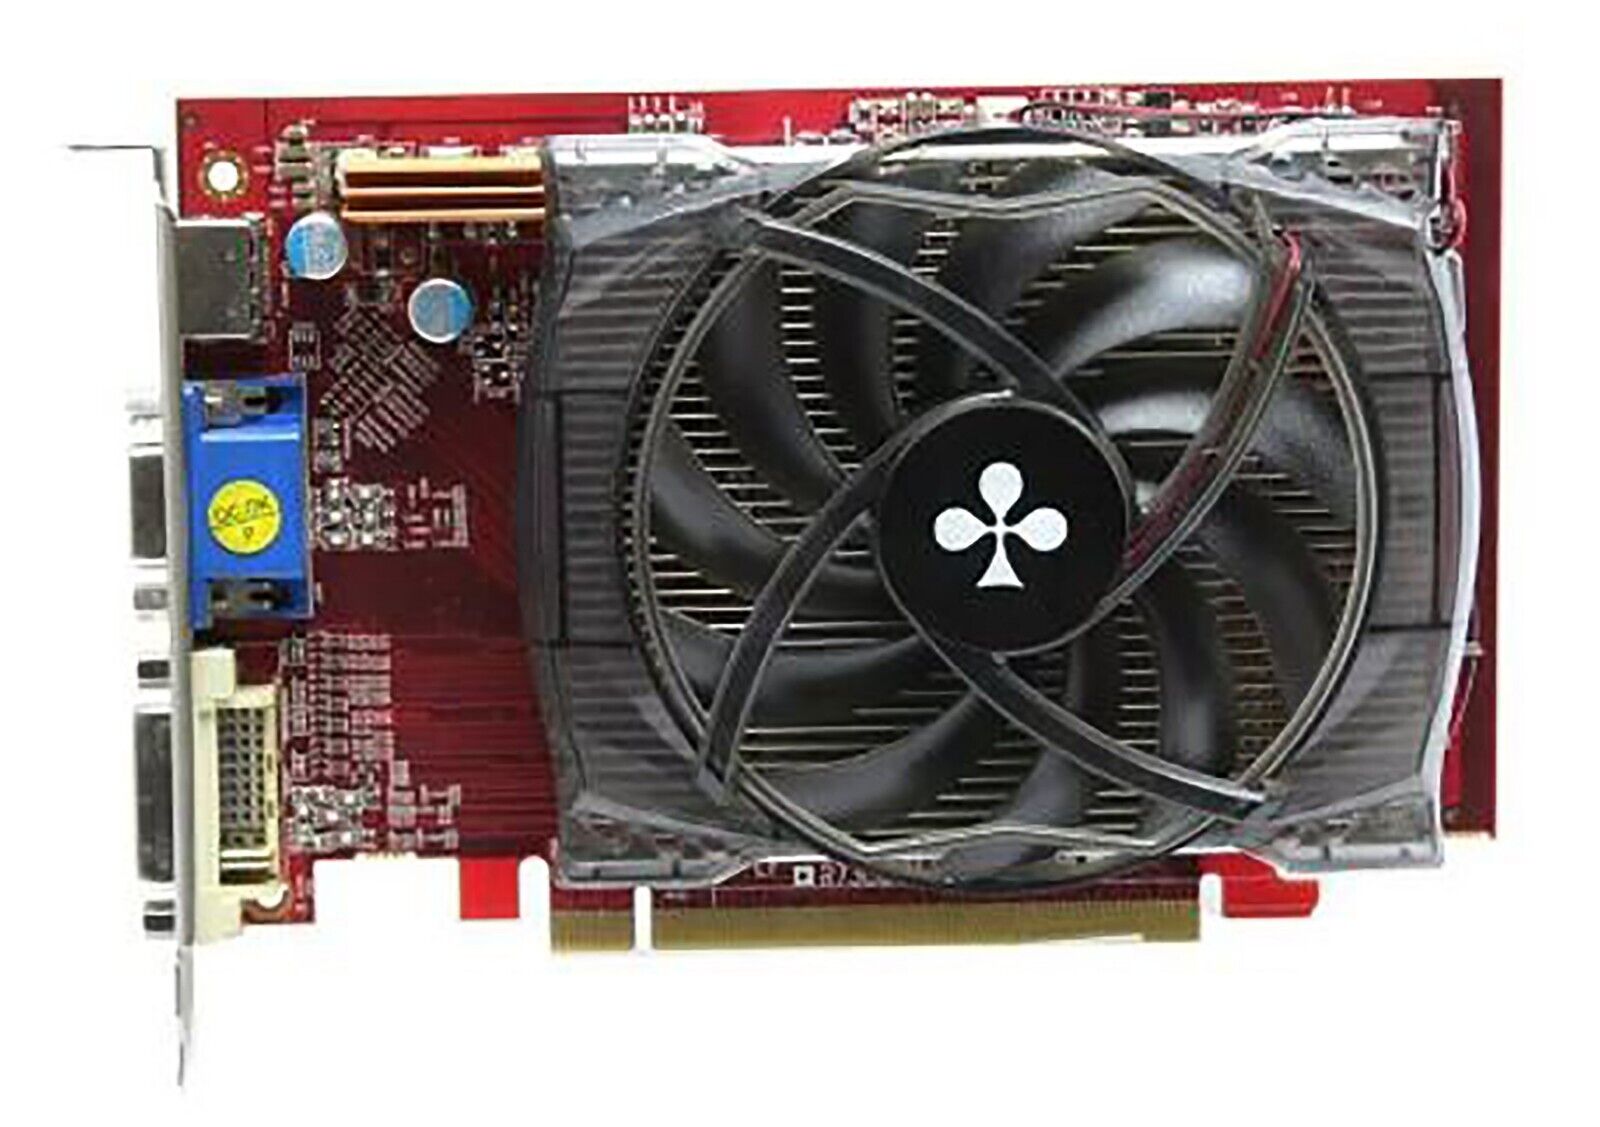 Club3D ATI Radeon HD 4670 512MB GDDR3 RV730XT PCI-E 2.0 x16 Graphics Card